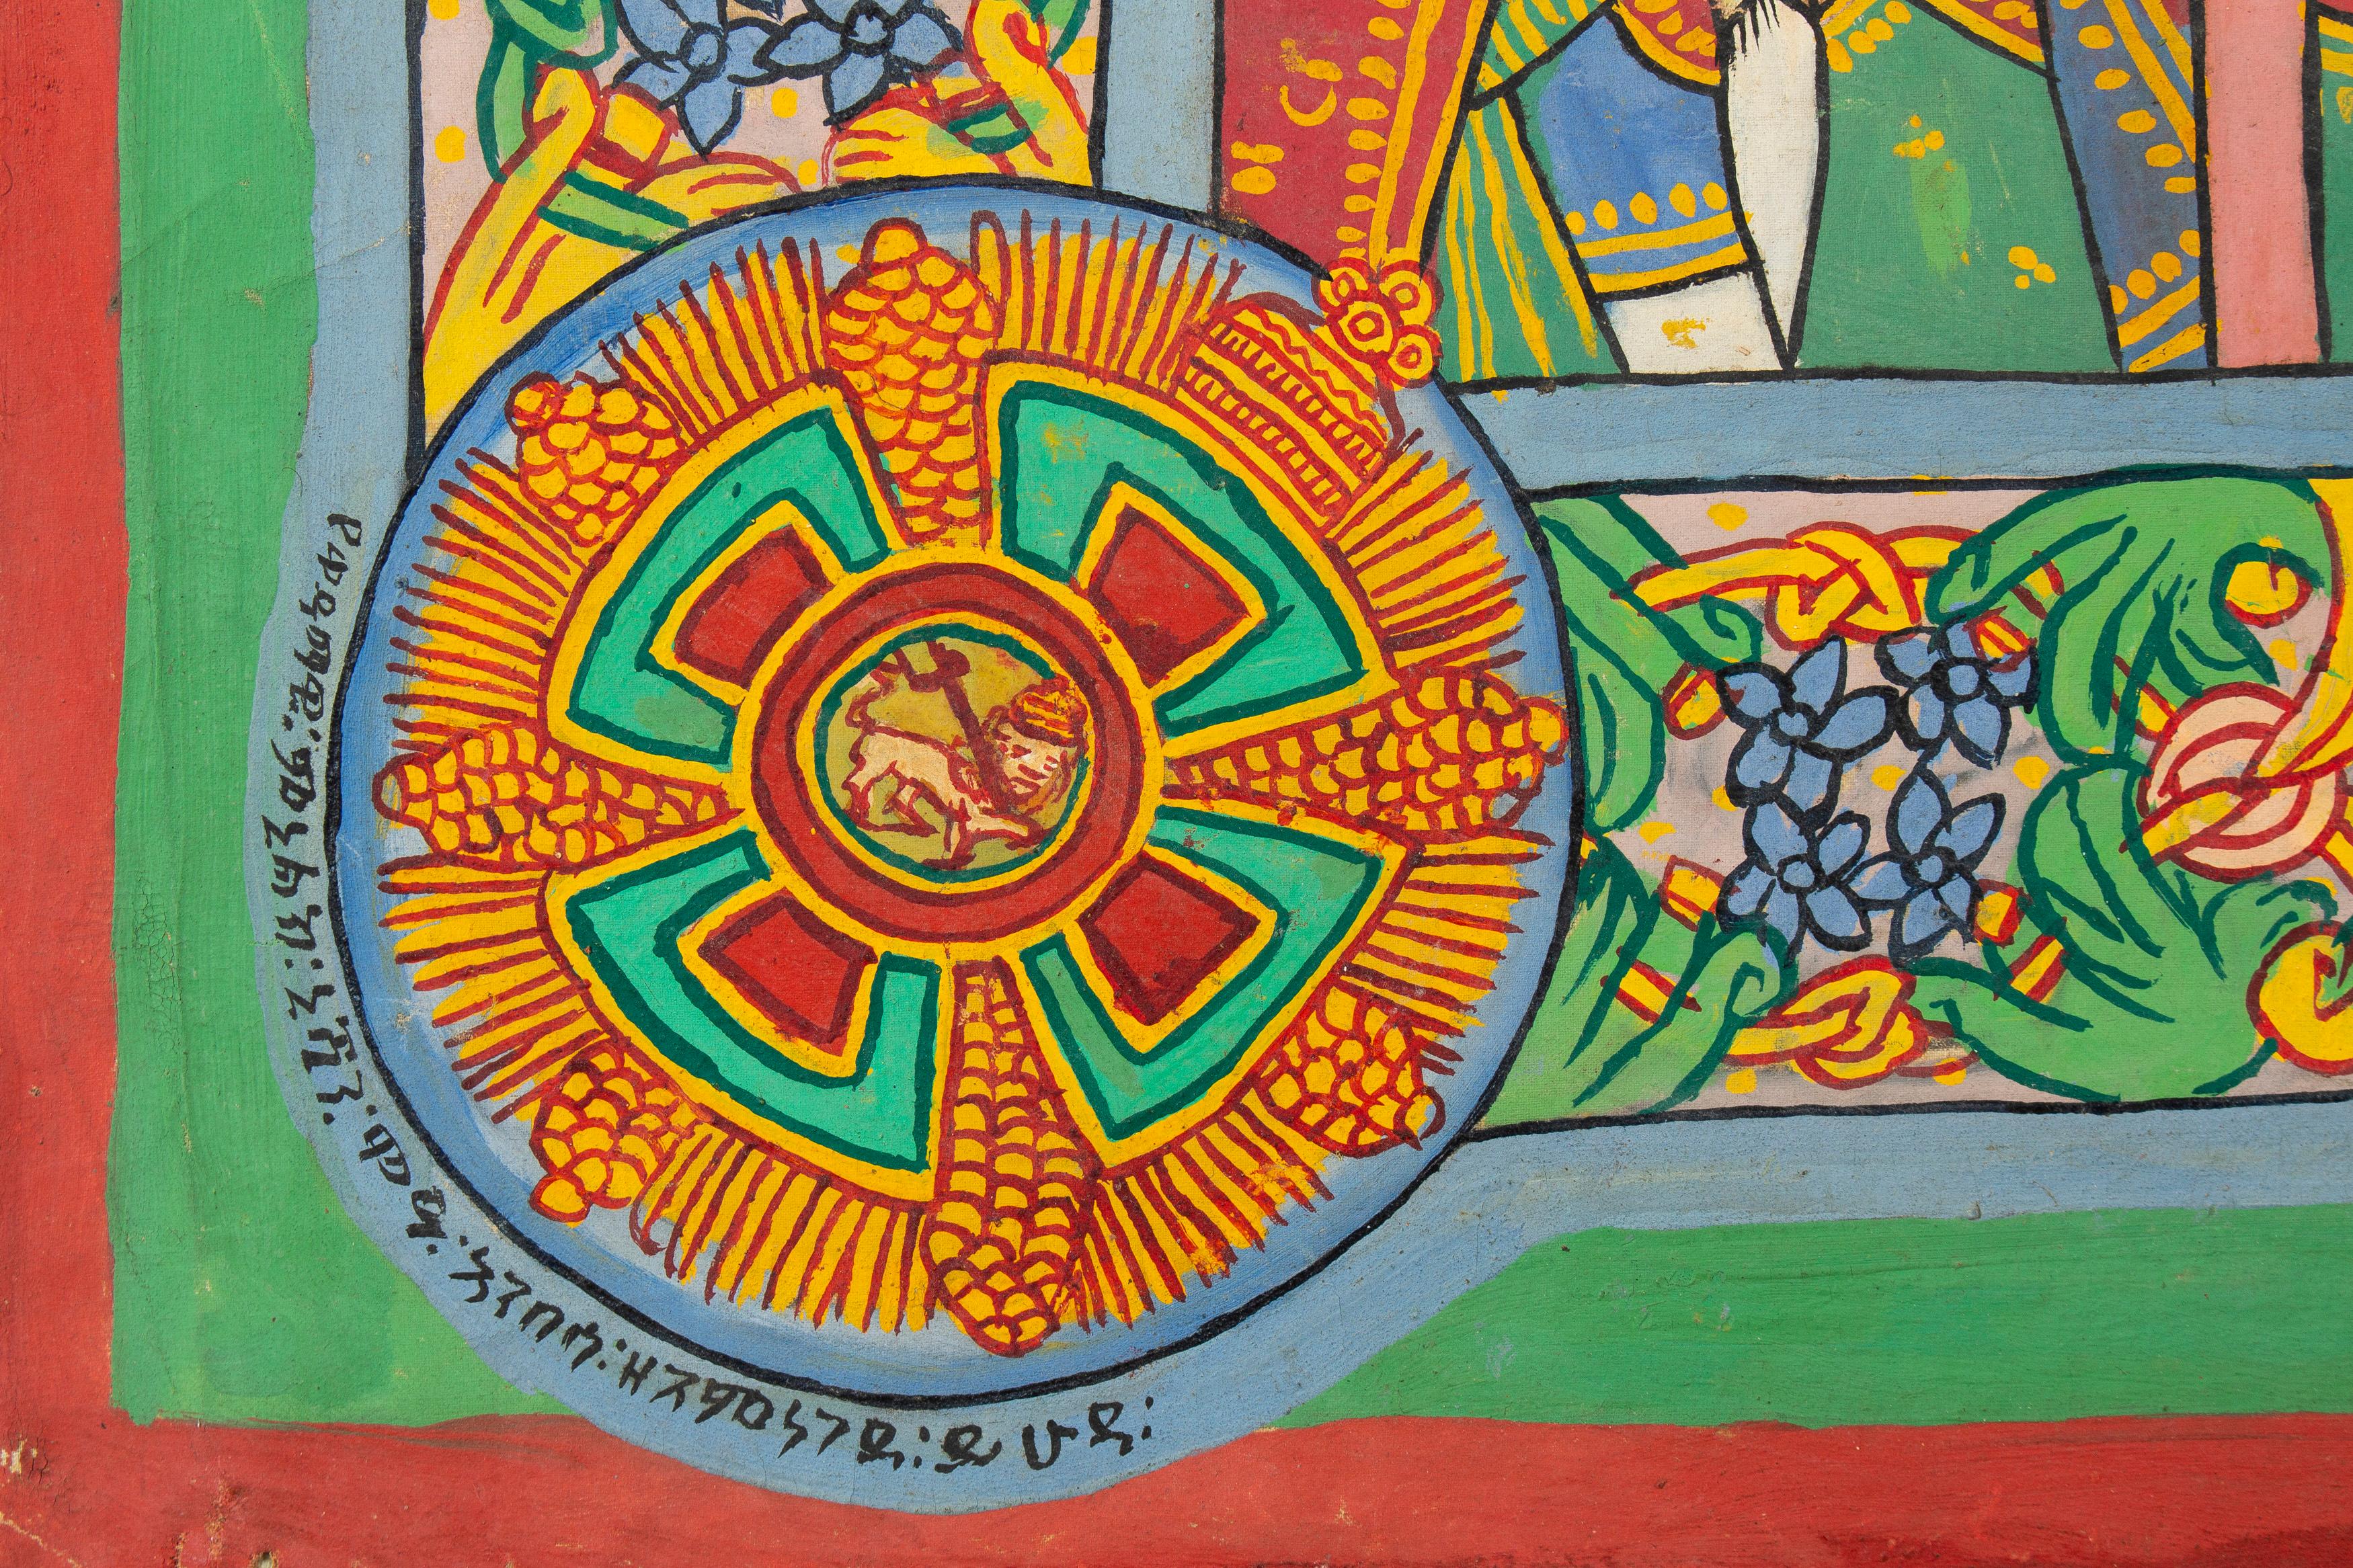 Naive äthiopische Malerei, Die größten Szenen aus Religion, Gesellschaft und Geschichte.
Öl auf Leinwand
Maße: 100 x 190 cm
s.b.r.
mit Inschriften in der Ge'ez-Sprache.